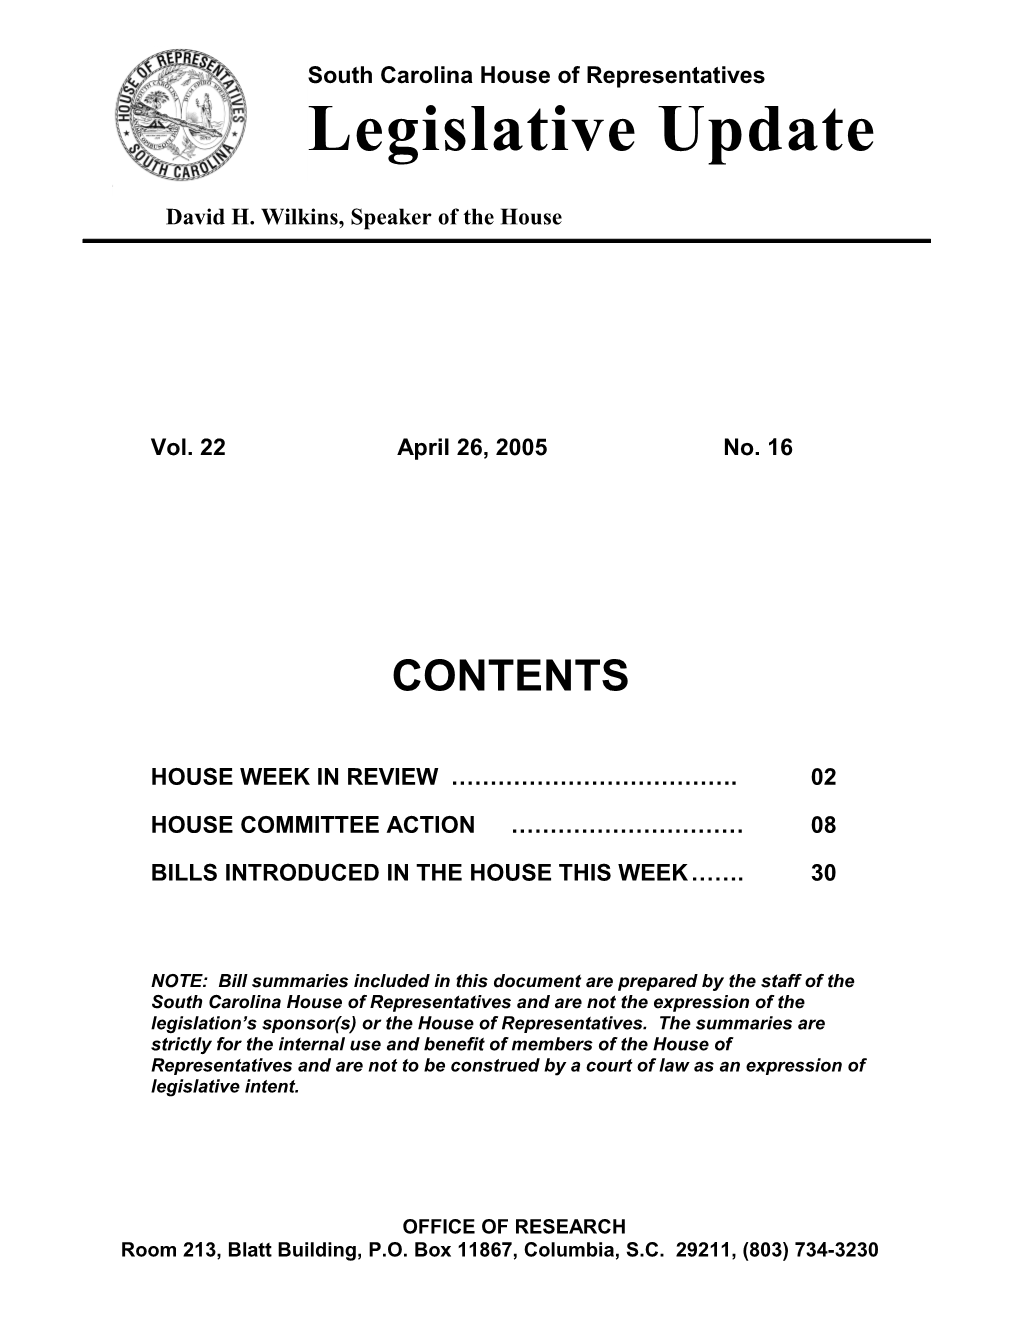 Legislative Update - Vol. 22 No. 16 April 26, 2005 - South Carolina Legislature Online